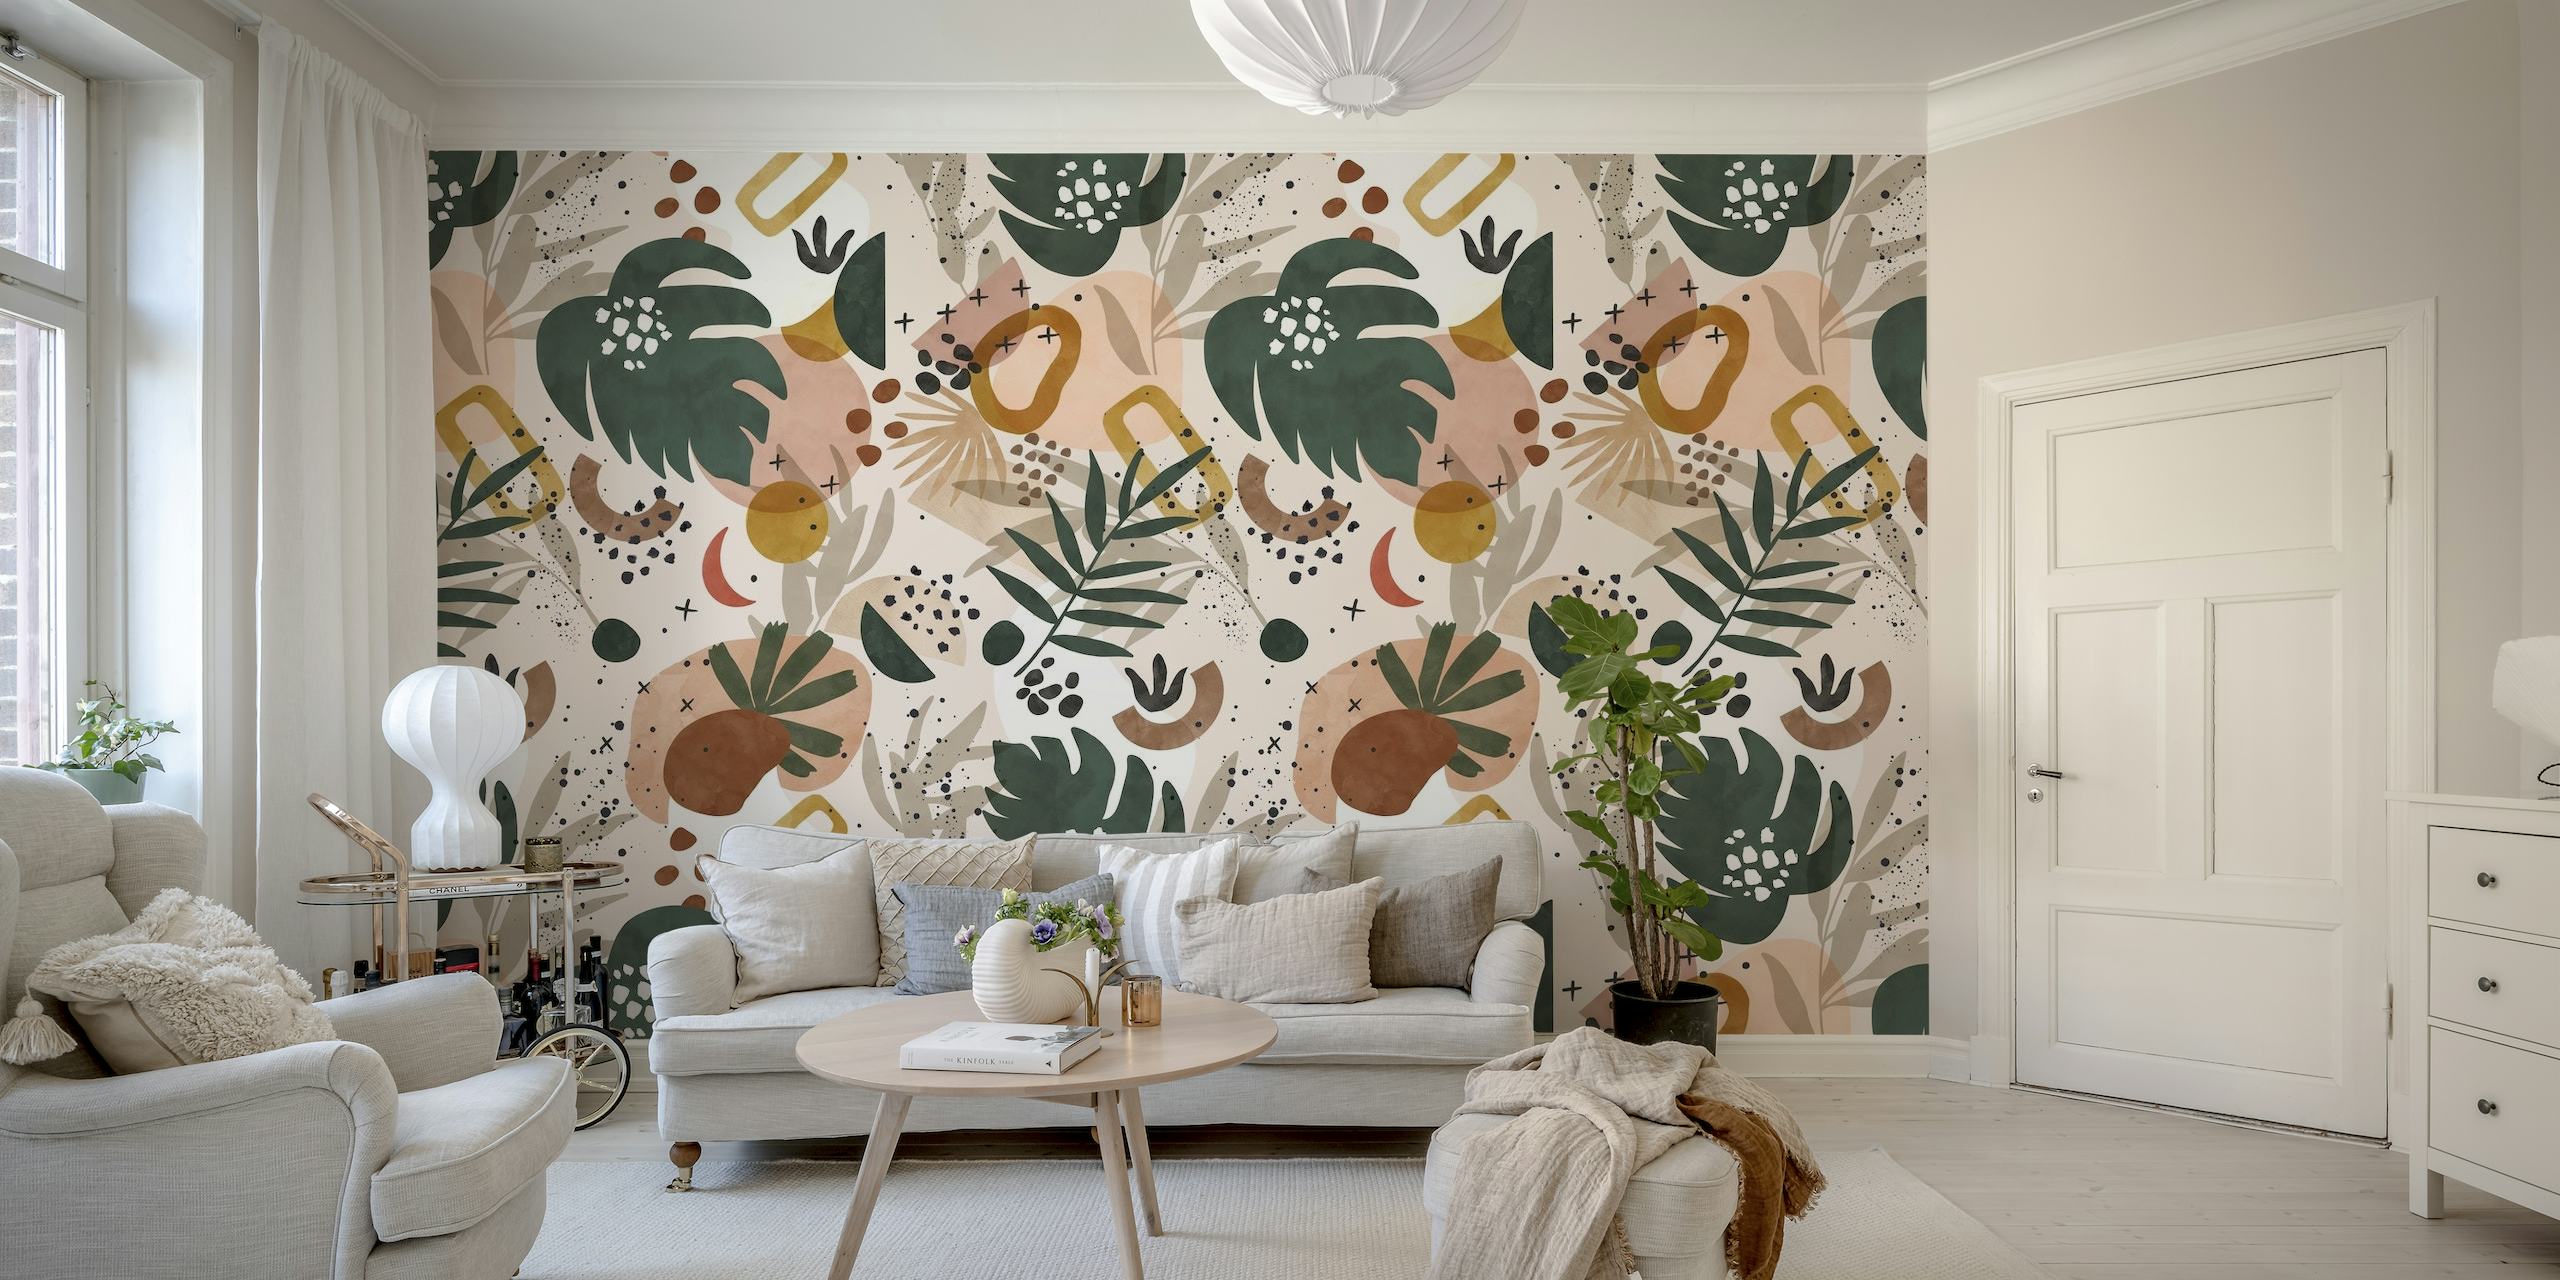 Zidna slika apstraktne prirode s tropskim lišćem i geometrijskim oblicima